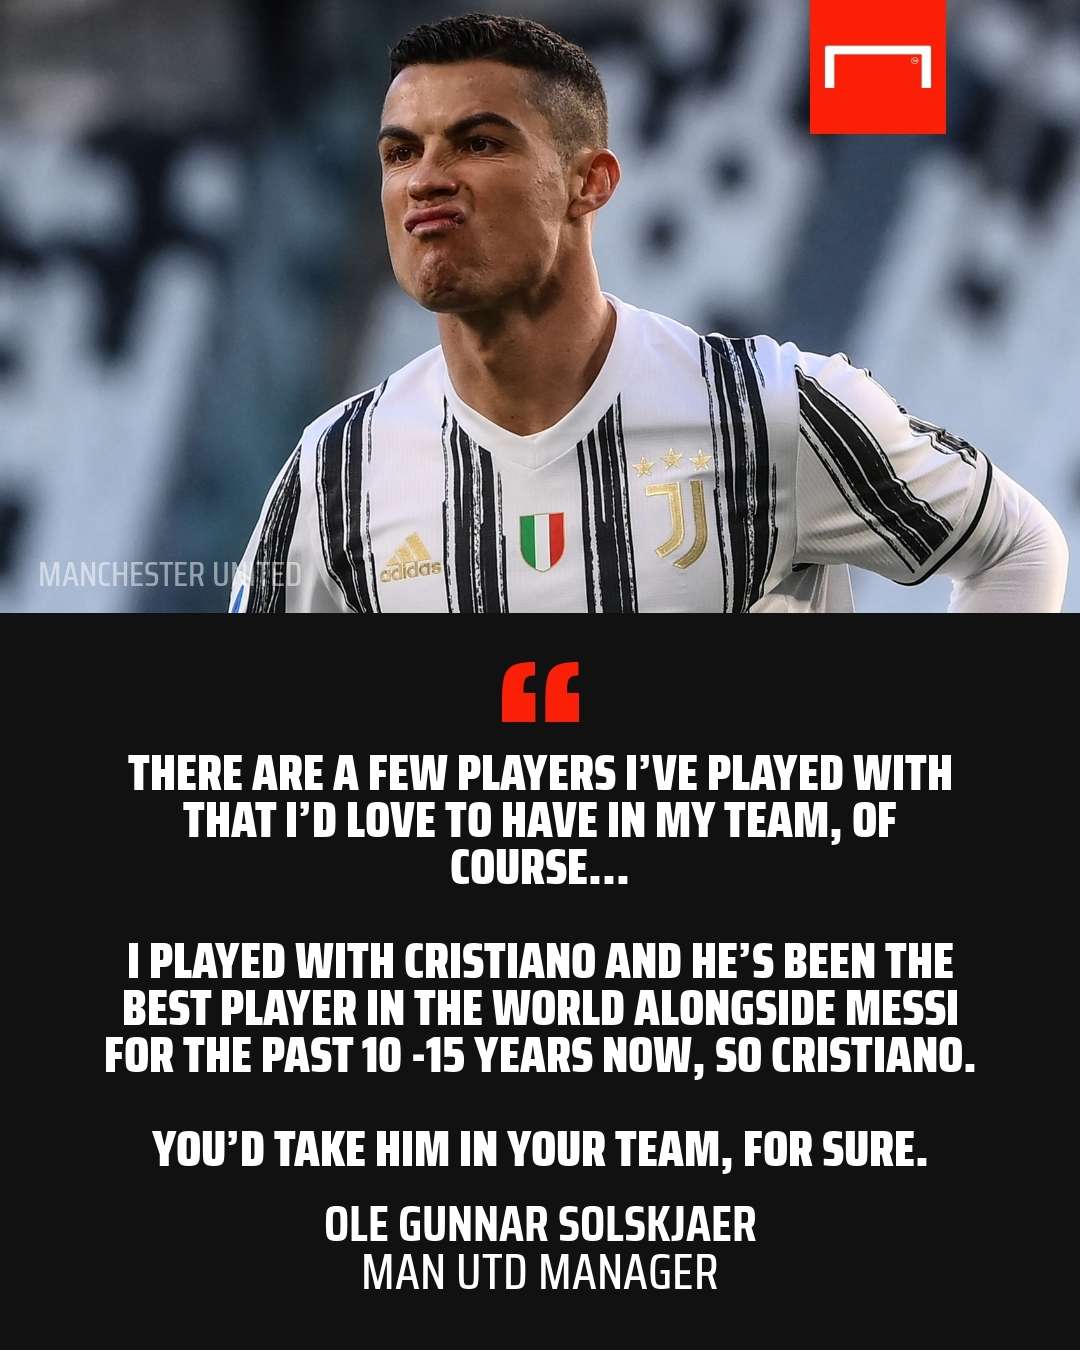 Cristiano Ronaldo Solskjaer quote GFX